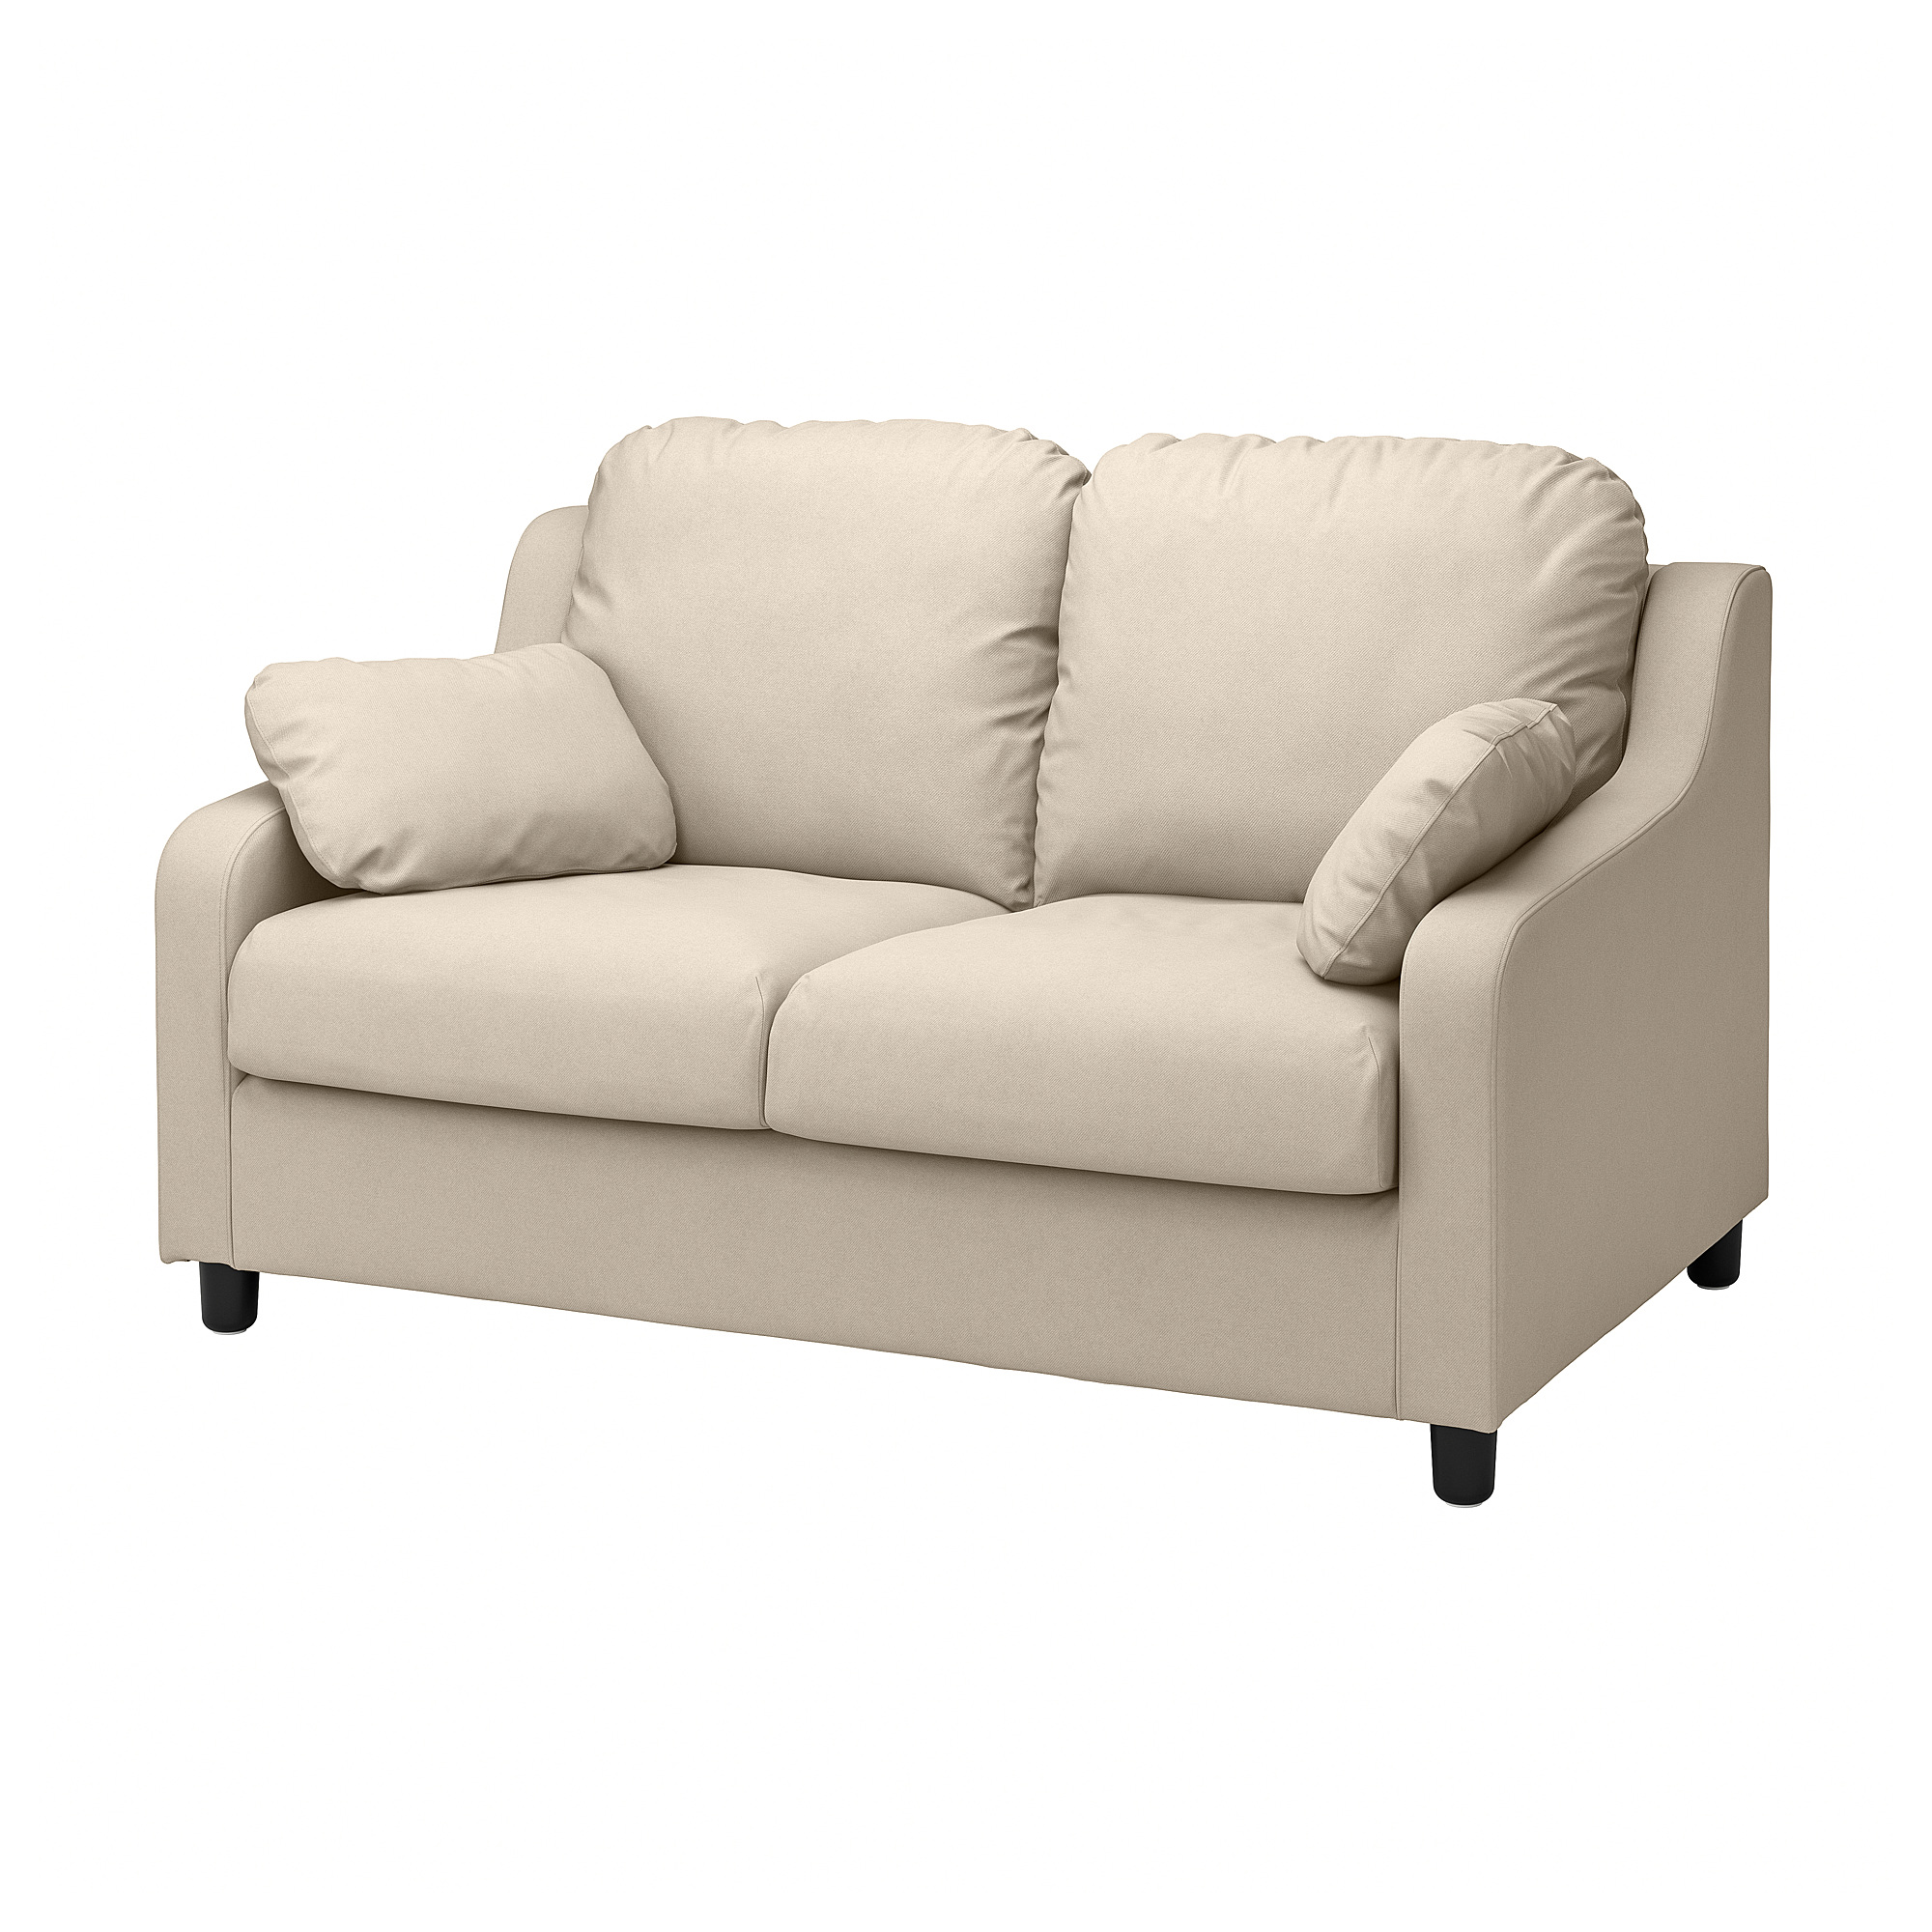 VINLIDEN 2-seat sofa